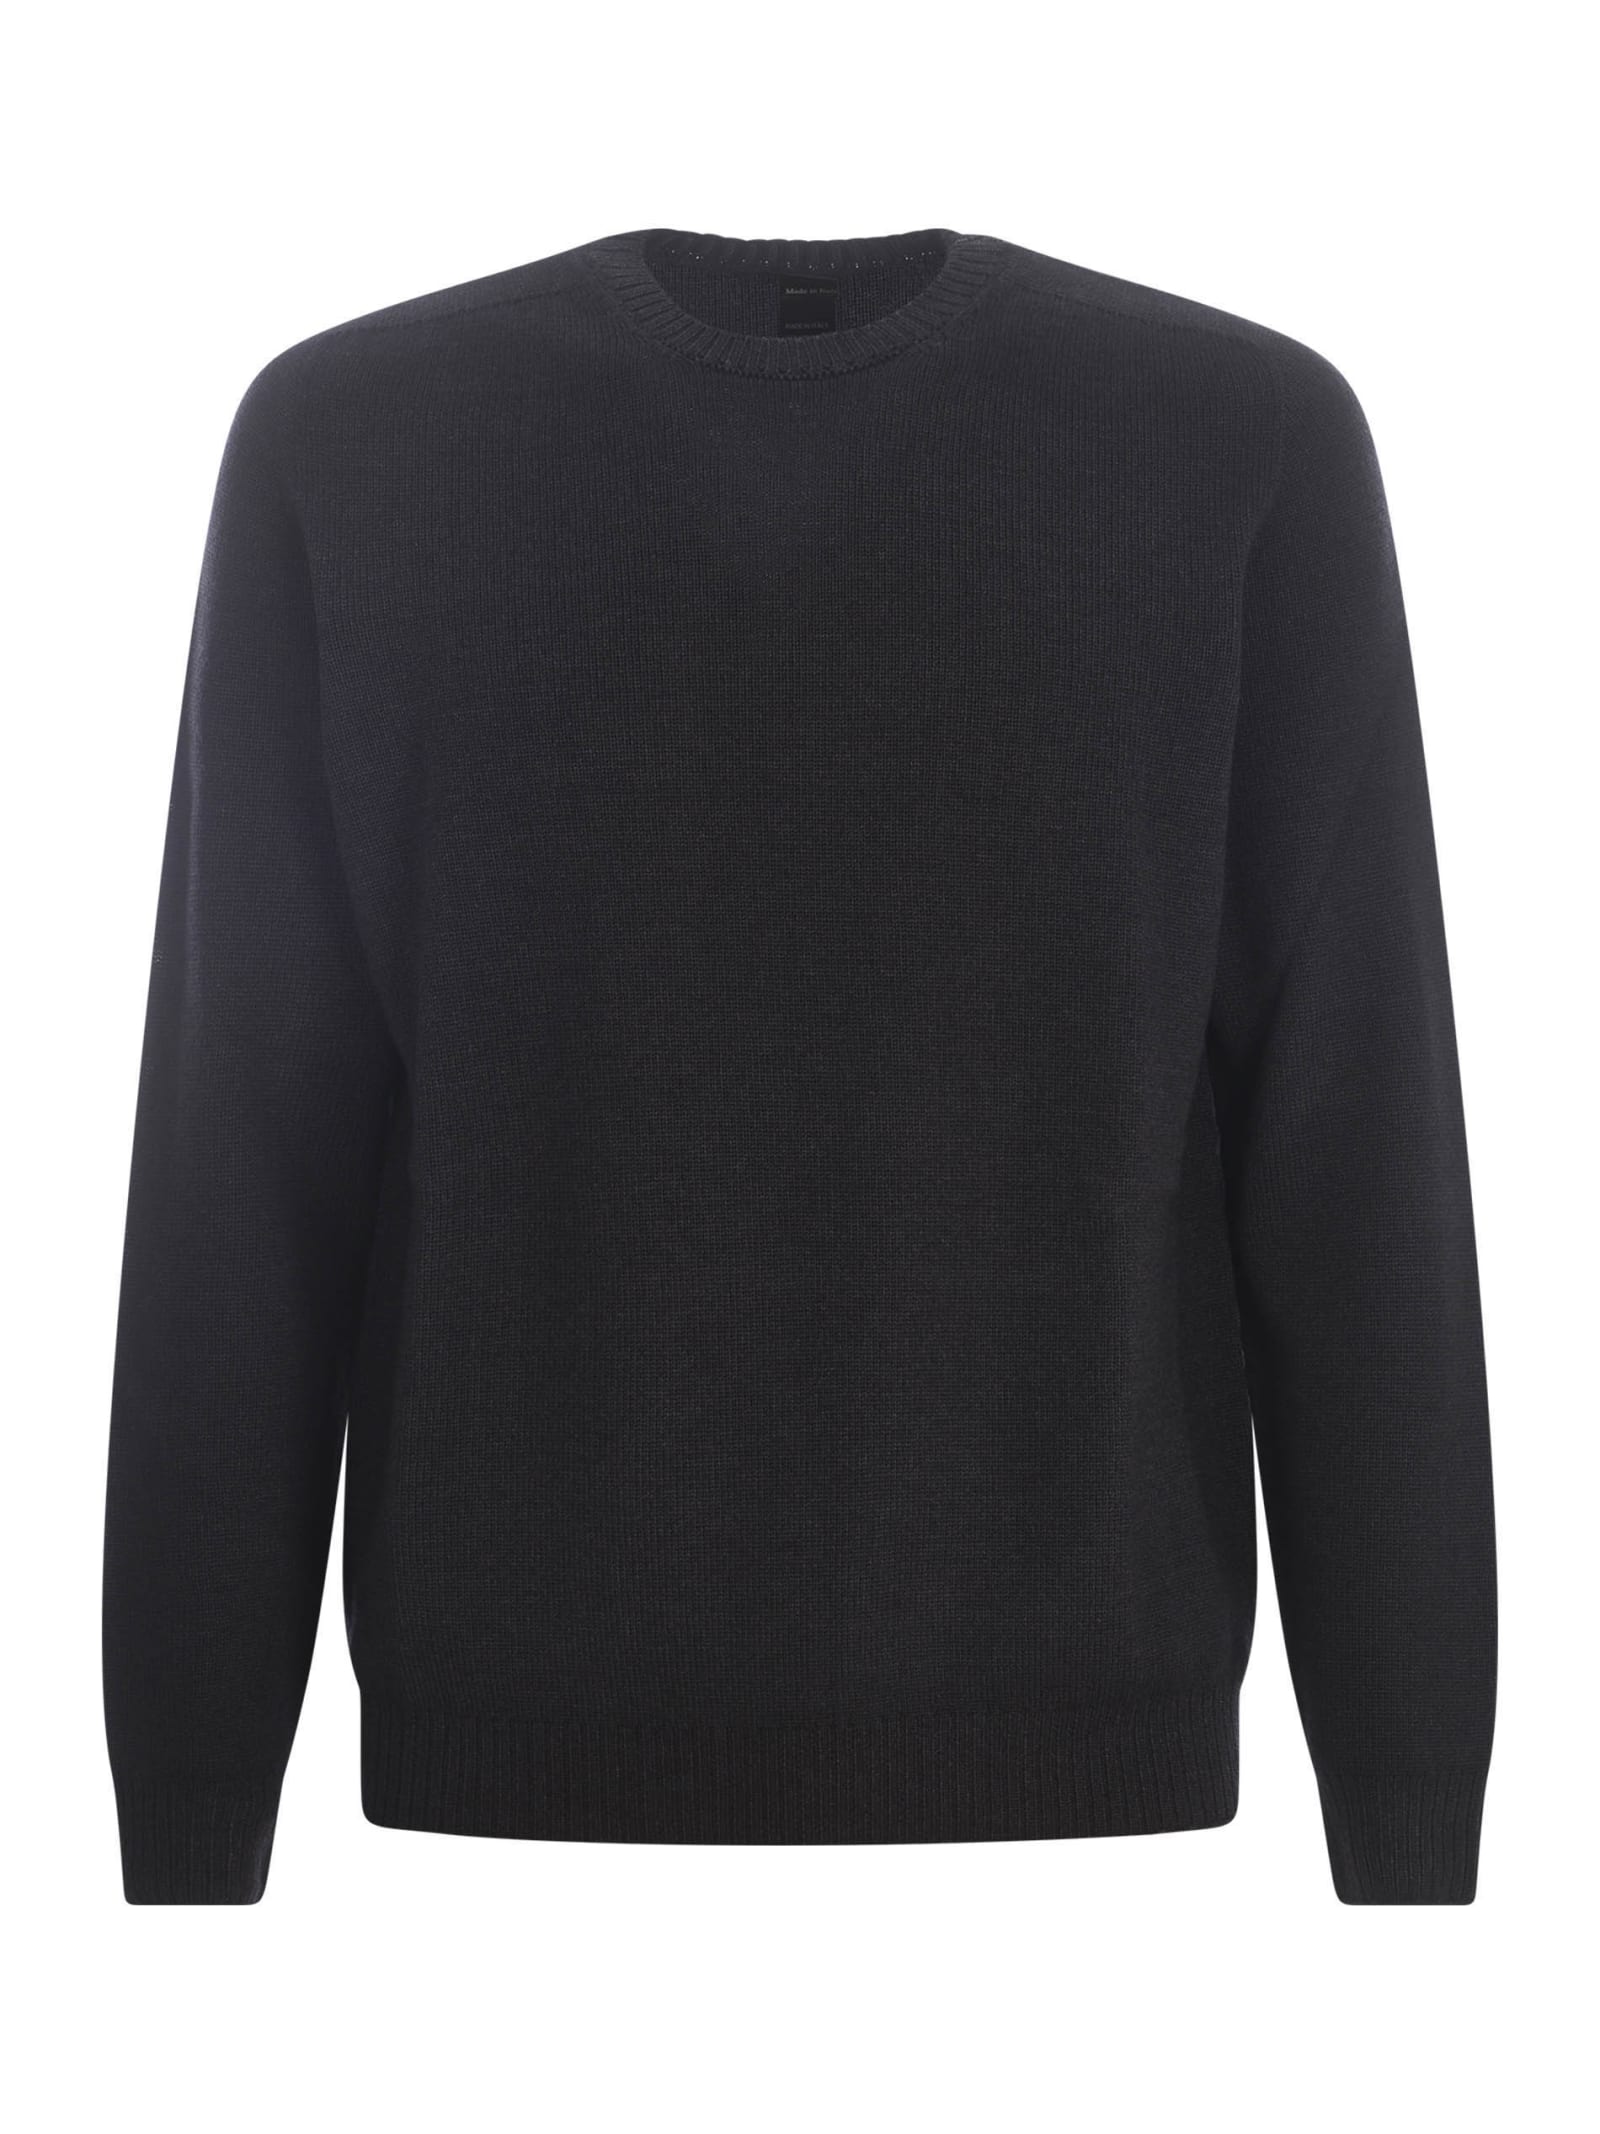 Shop Jeordie's Sweater Jeordies In Merino Wool In Grigio Scuro